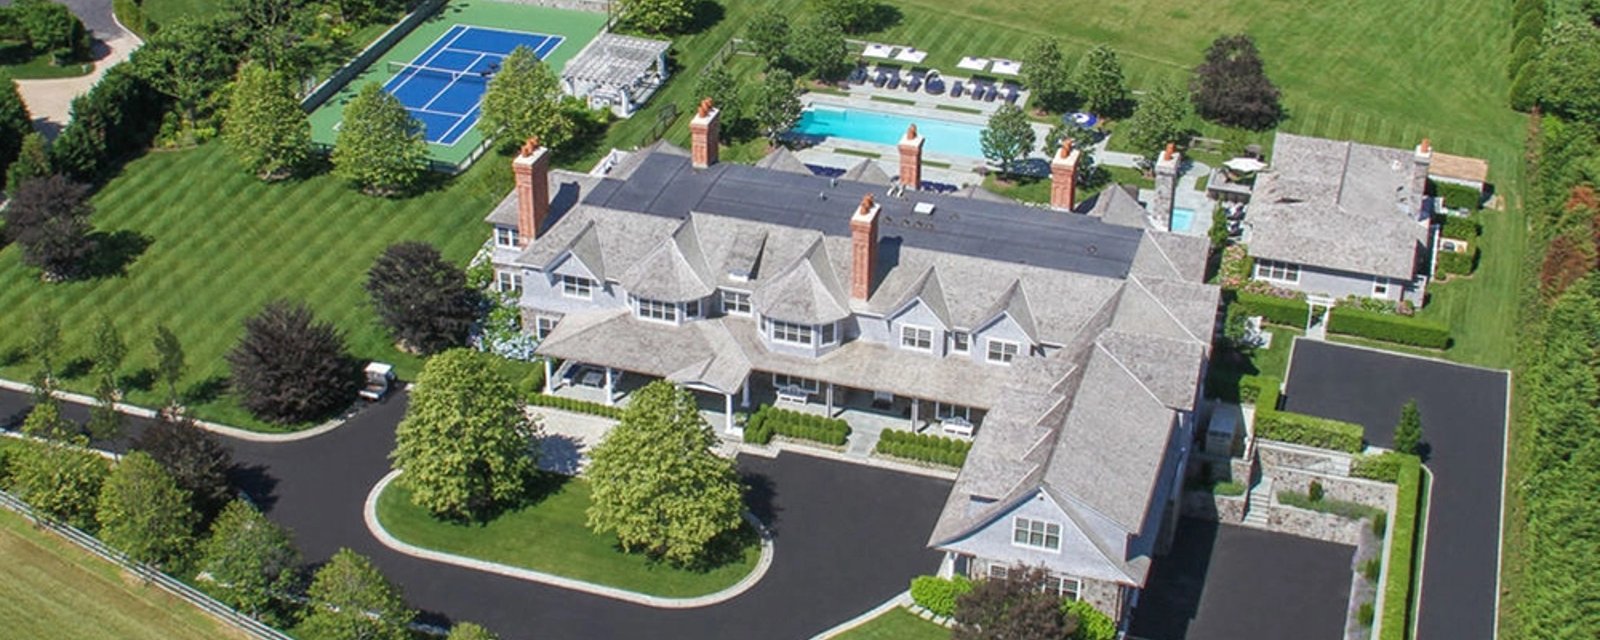 Découvrez la location la plus chère des Hamptons à 1 million de dollars par mois